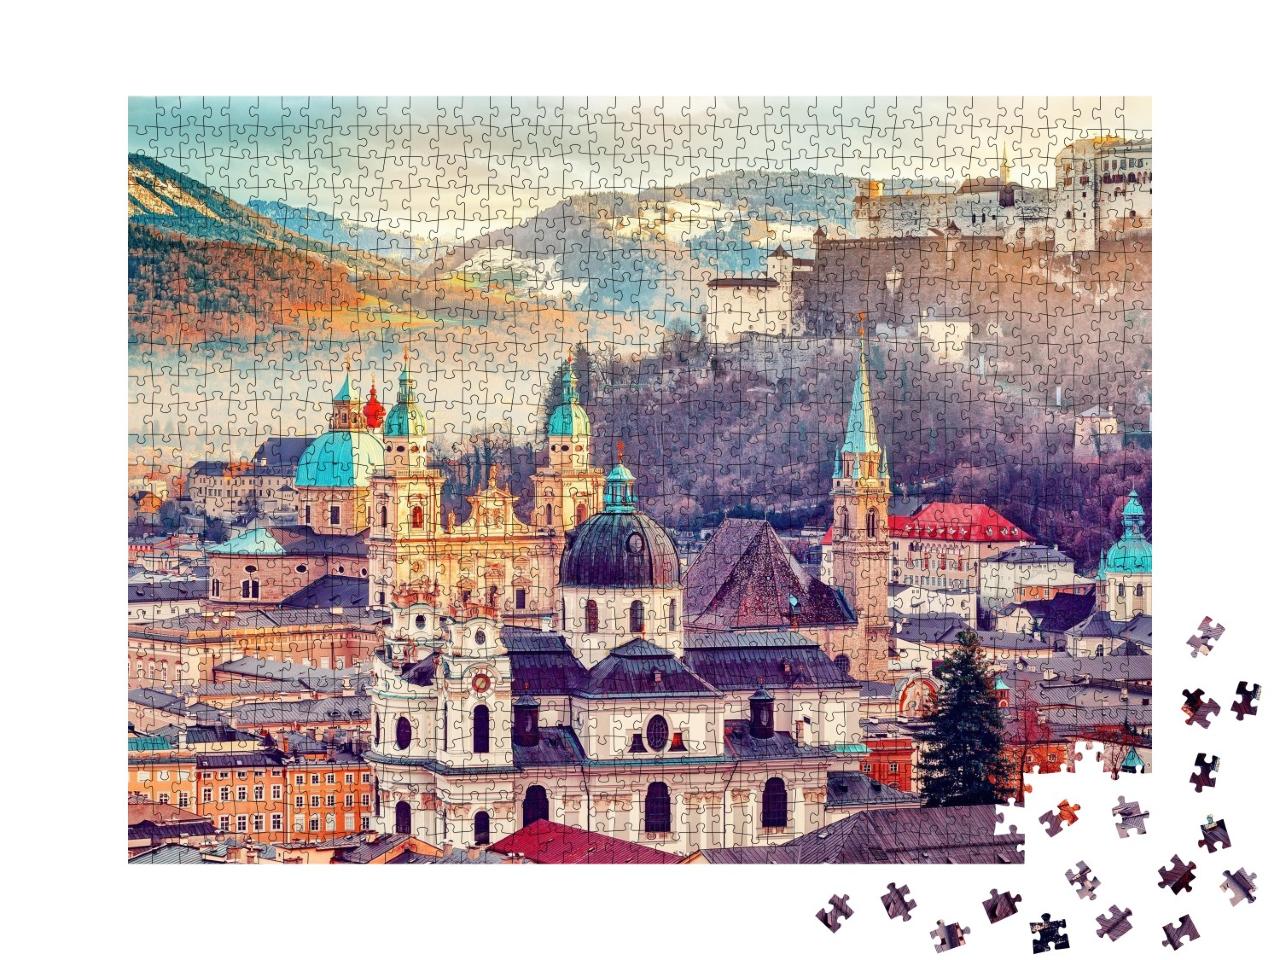 Puzzle de 1000 pièces « Magnifique vue sur Salzbourg en automne, Autriche »